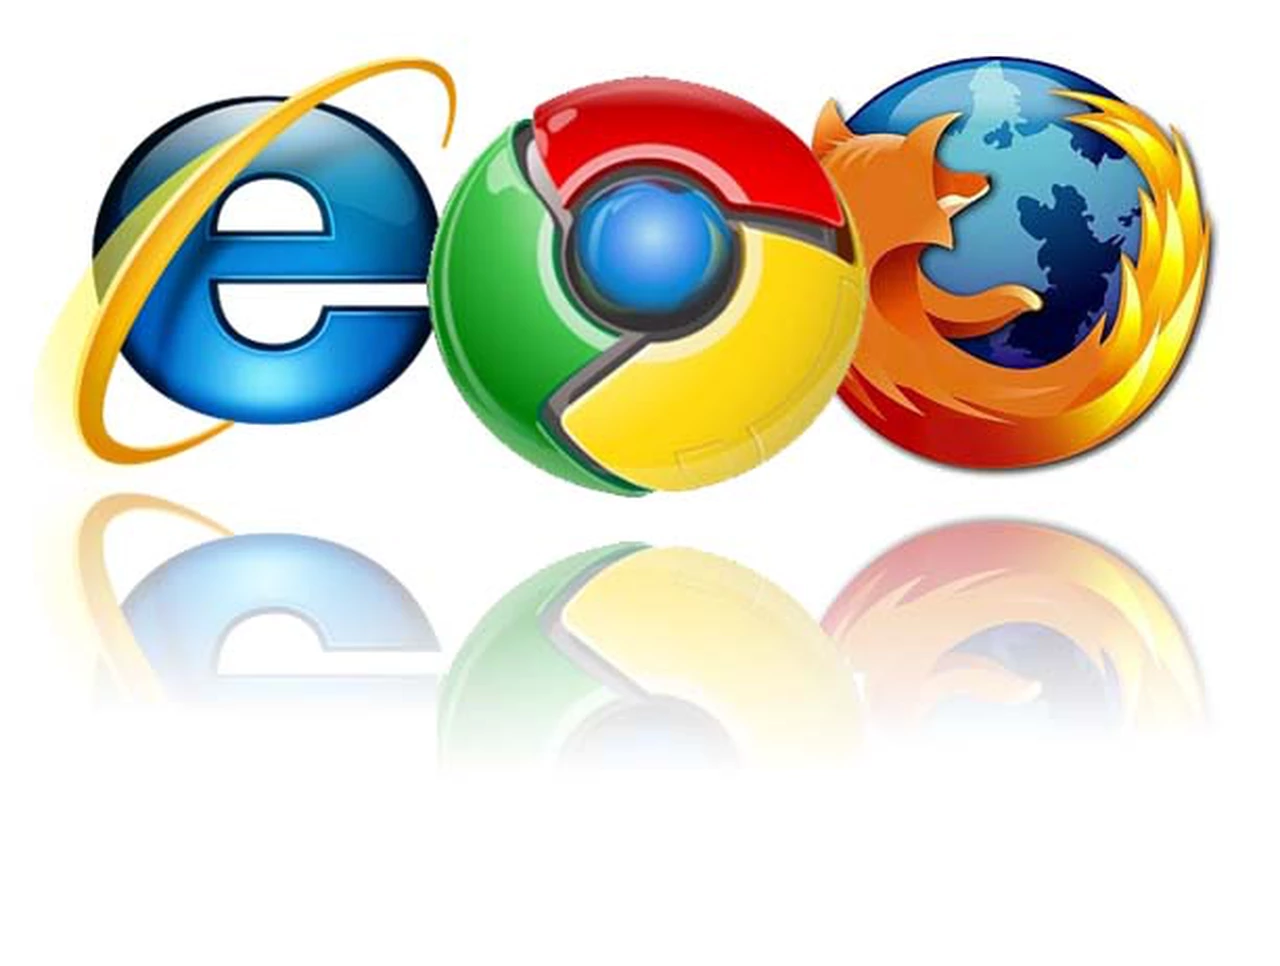 Chrome supera por primera vez a Internet Explorer como navegador más popular